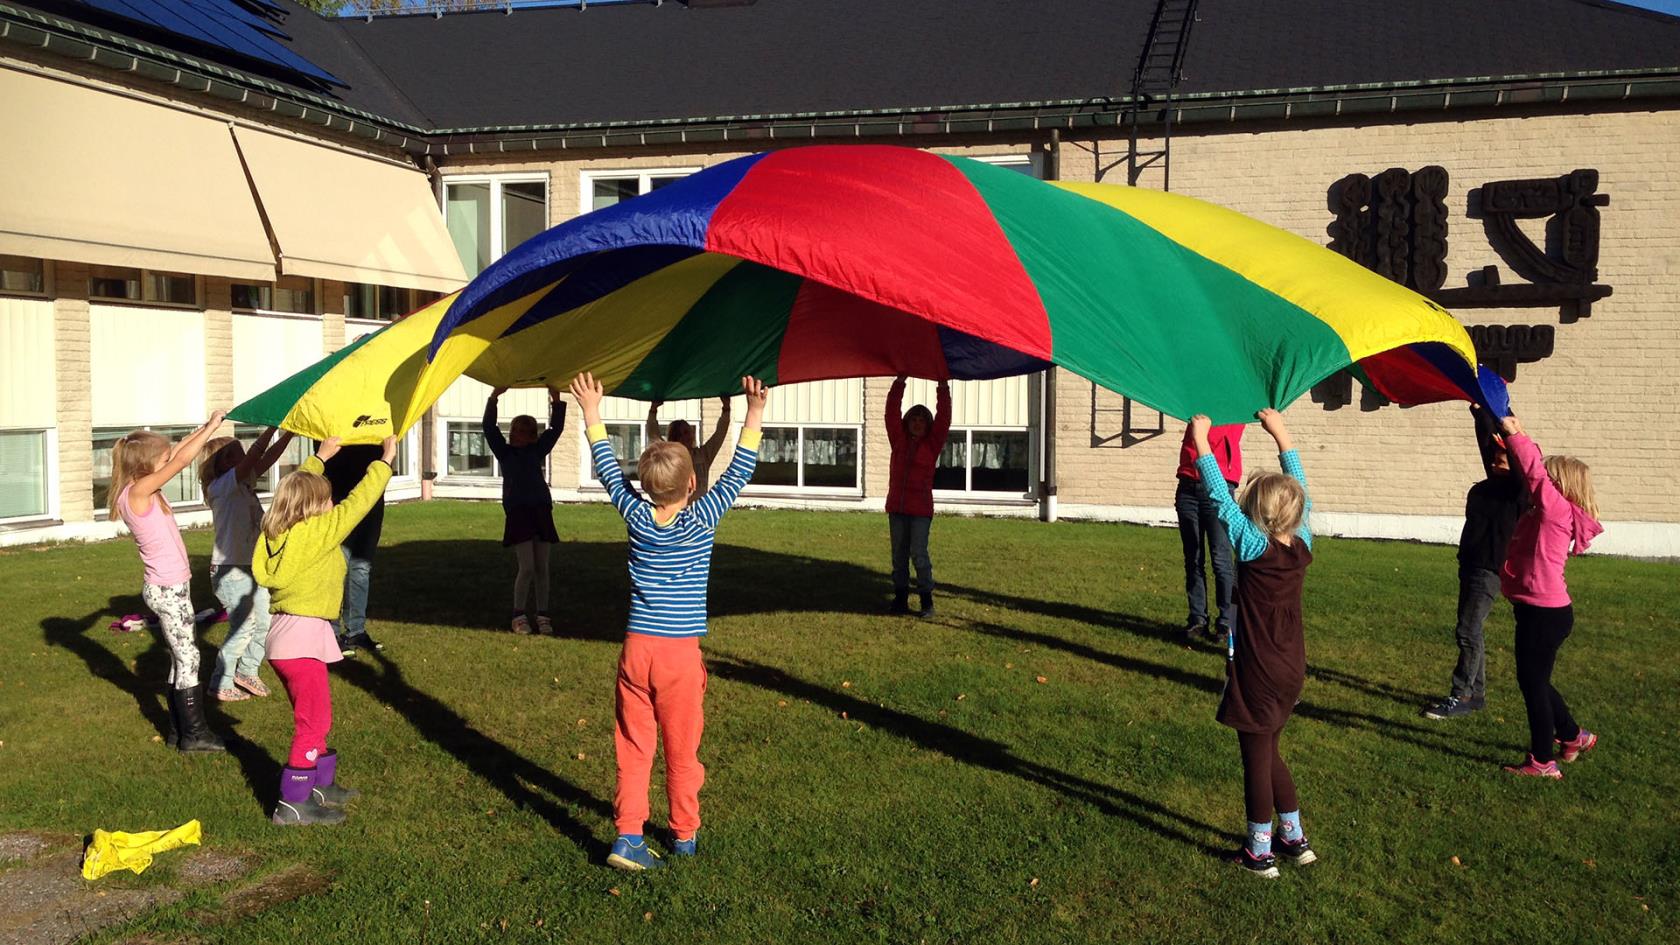 Tio barn och en ledare leker med en stor färggrann "fallskärm". De hjälps åt att kasta upp den i luften.De är utomhus på en gräsmatta.